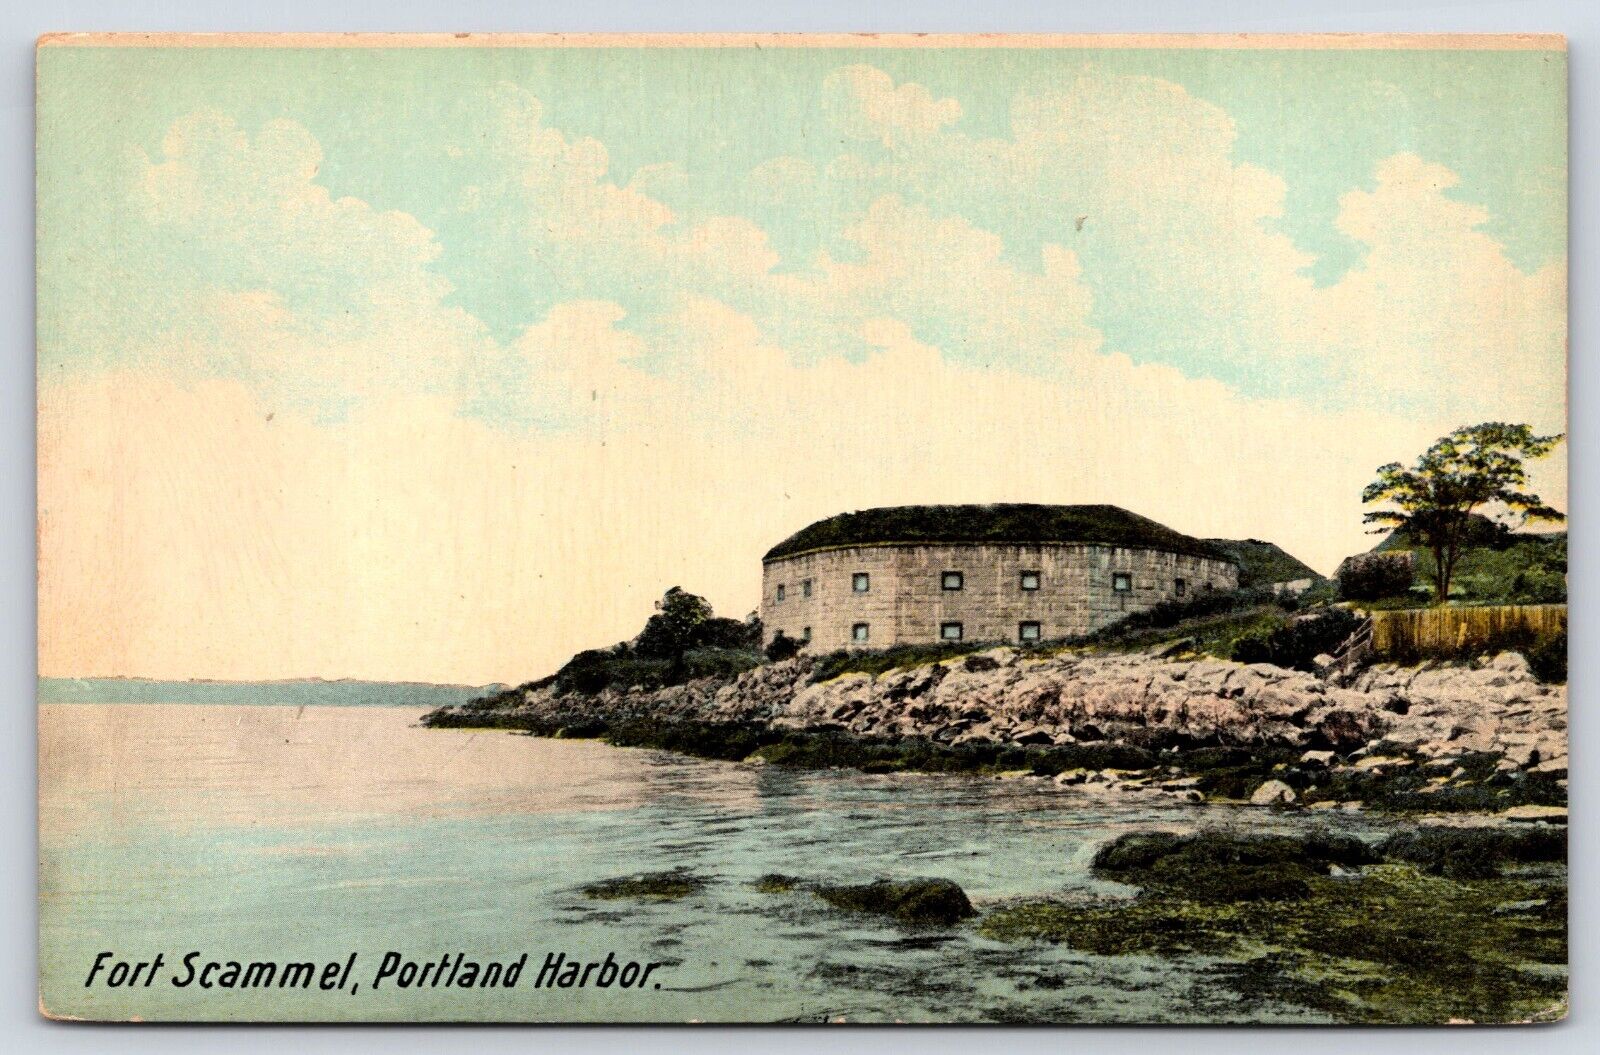 Maine Portland Harbor Fort Scammel Vintage Postcard